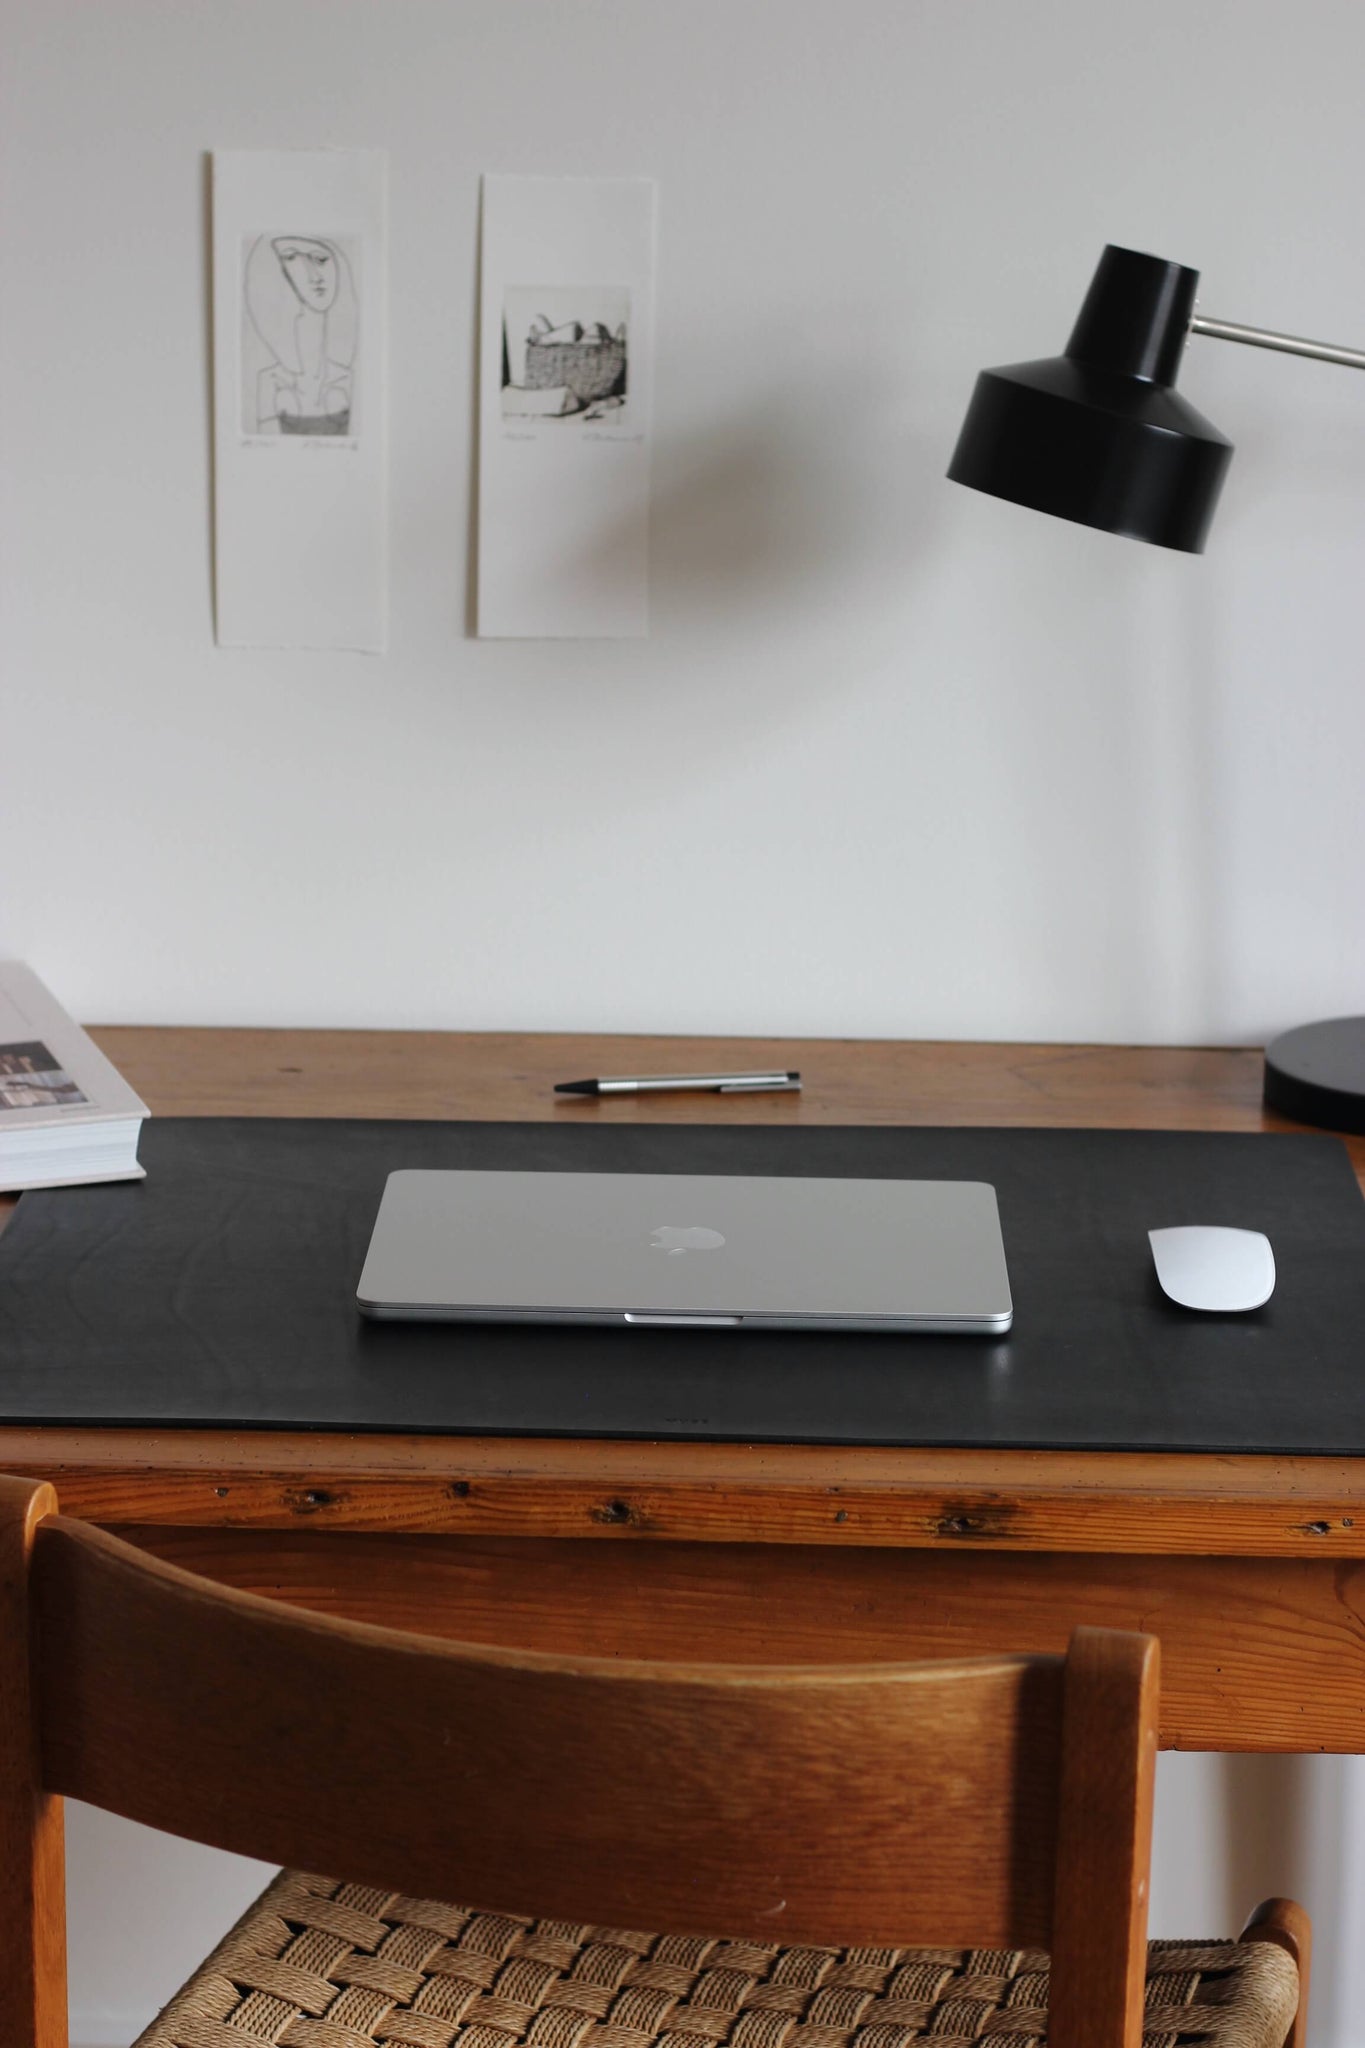 Eine Leder Schreibtischunterlage in Schwarz liegt auf einem Schreibtisch aus Holz und darauf befindet sich ein zugeklapptes MacBook und eine Maus.